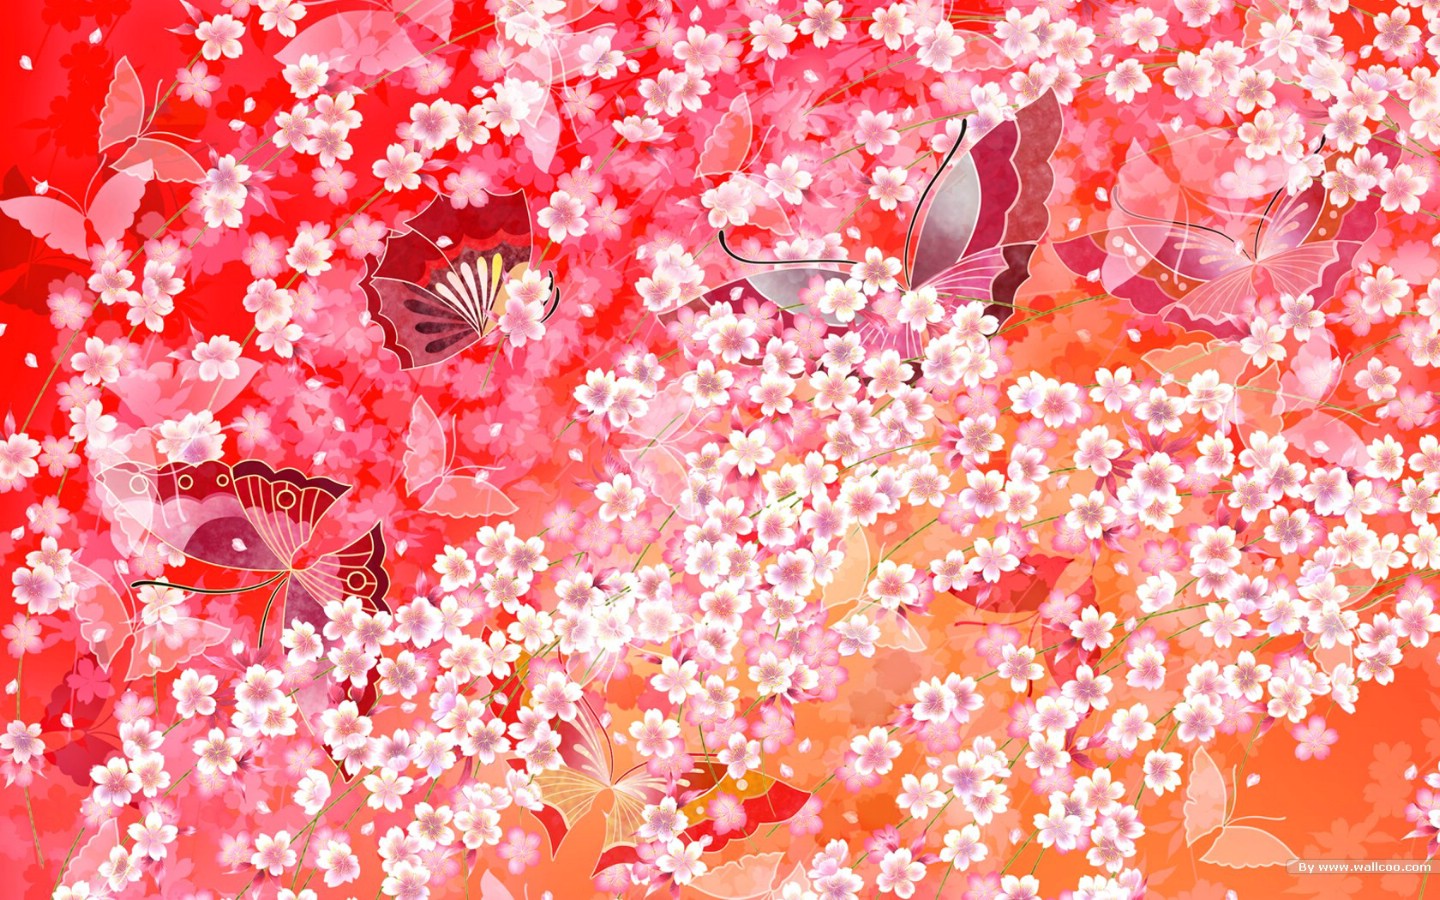 壁纸1440x900日本风格色彩与图案设计壁纸 日本风格色彩图案设计图片壁纸 日本风格色彩设计壁纸 日本风格色彩设计图片 日本风格色彩设计素材 插画壁纸 插画图库 插画图片素材桌面壁纸